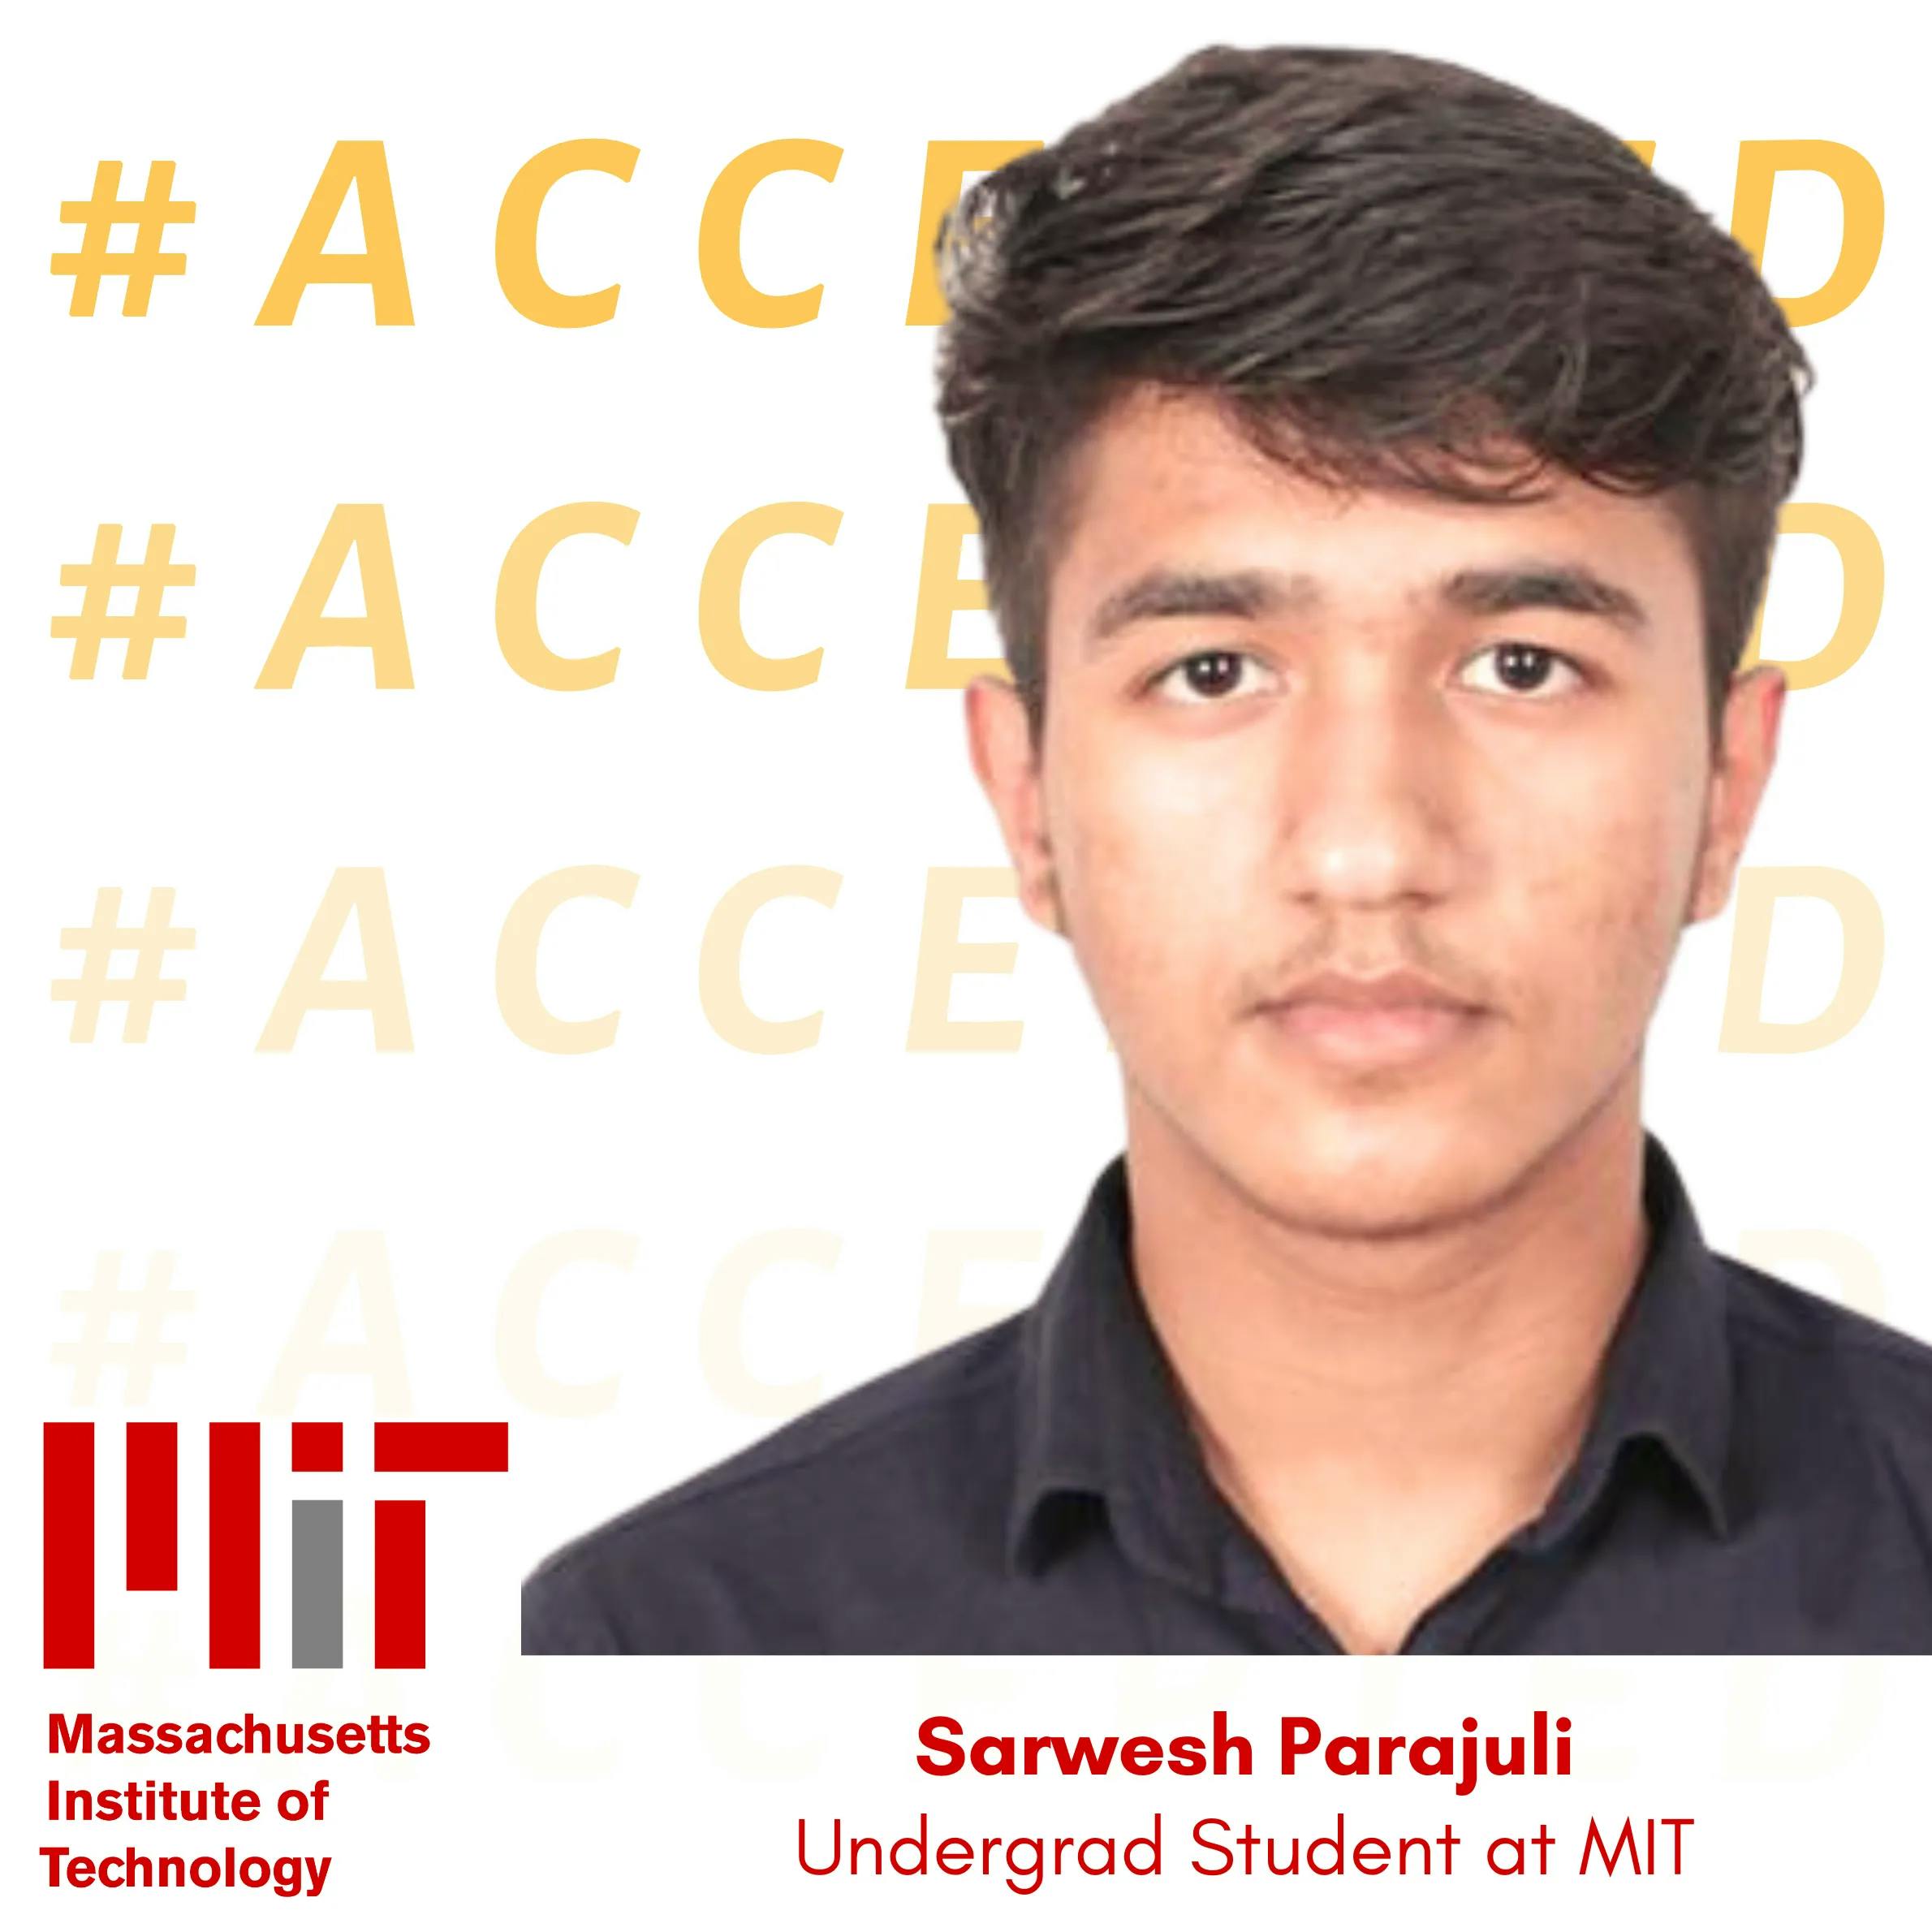 Sarwesh Parajuli admitted to MIT